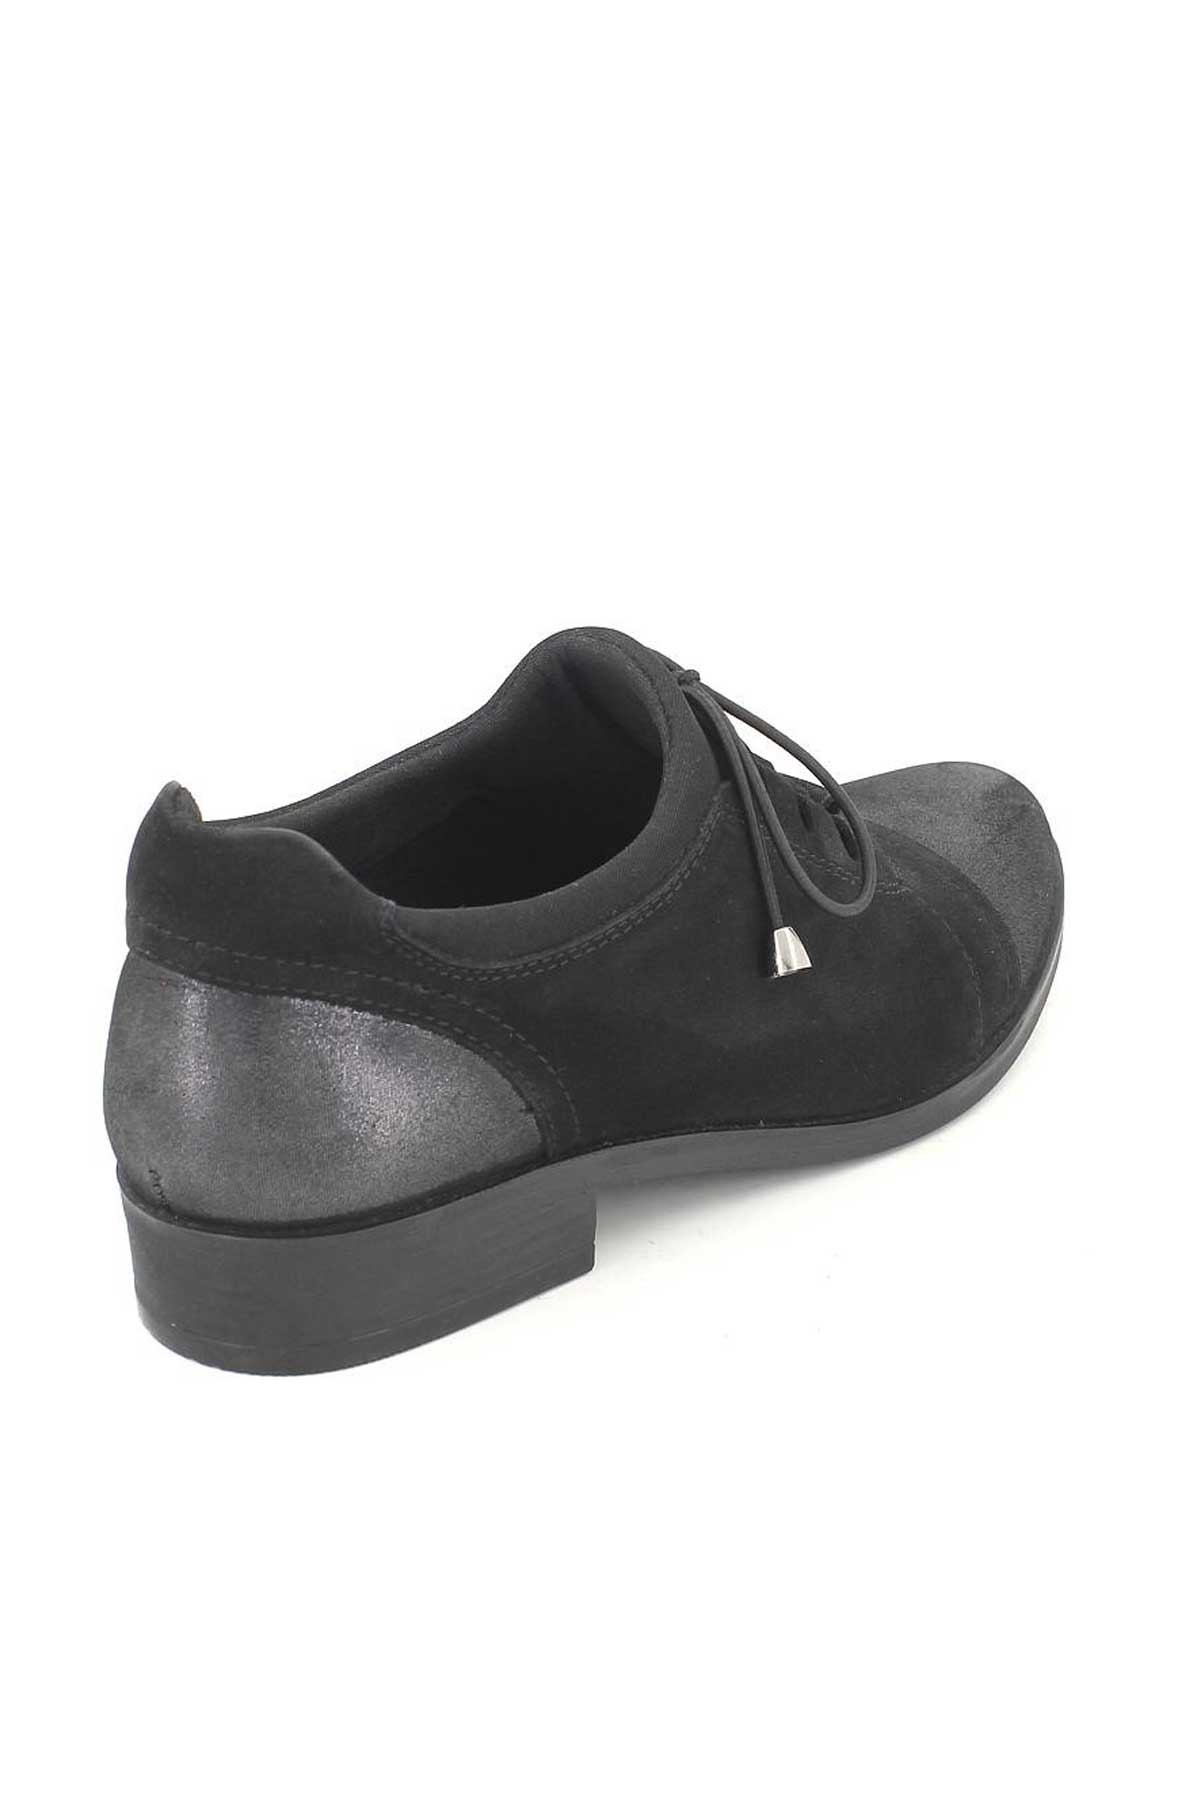 Kadın Bağcıklı Süet Deri Ayakkabı Siyah 145455K - Thumbnail